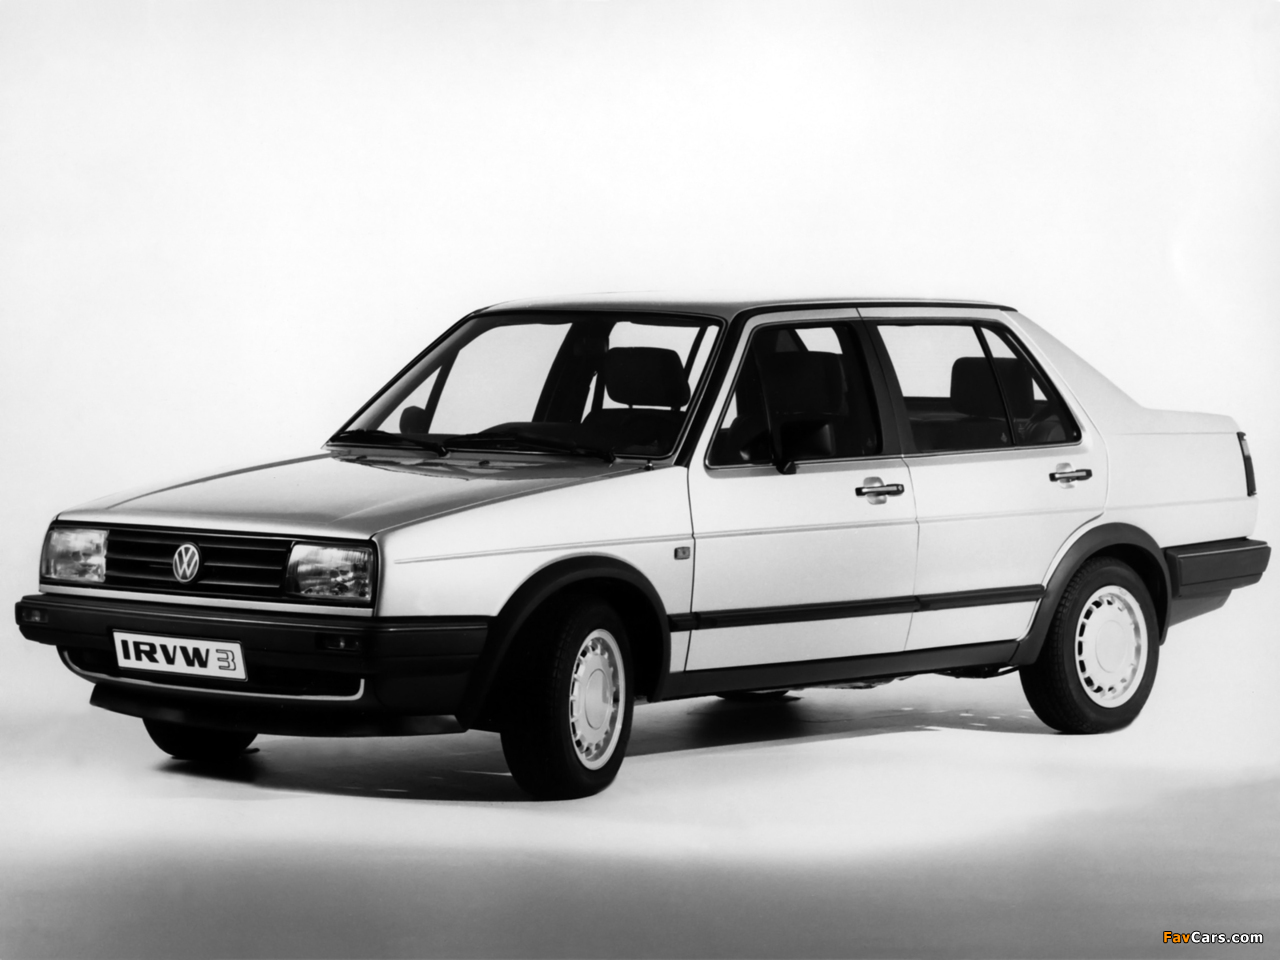 Volkswagen Jetta IRVW 3 (II) 1985 pictures (1280 x 960)